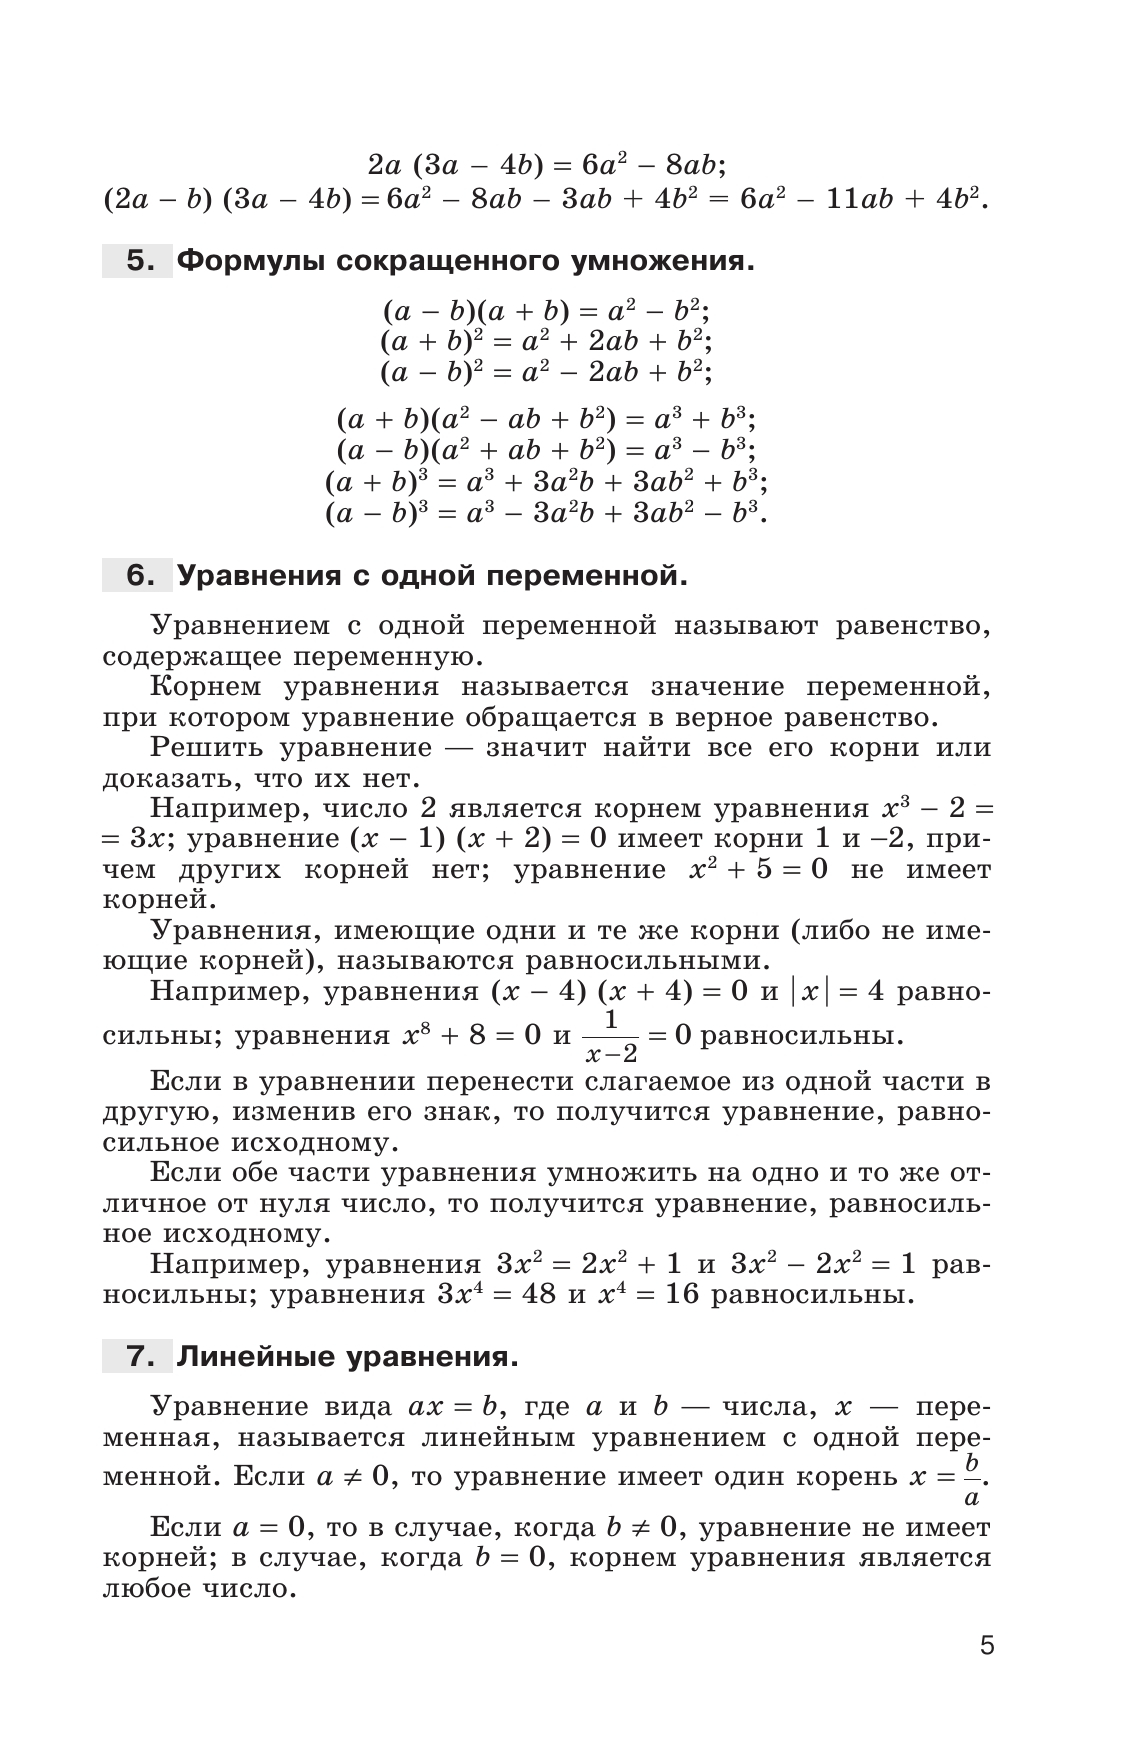 Сборник задач по алгебре. 8-9 классы. 2